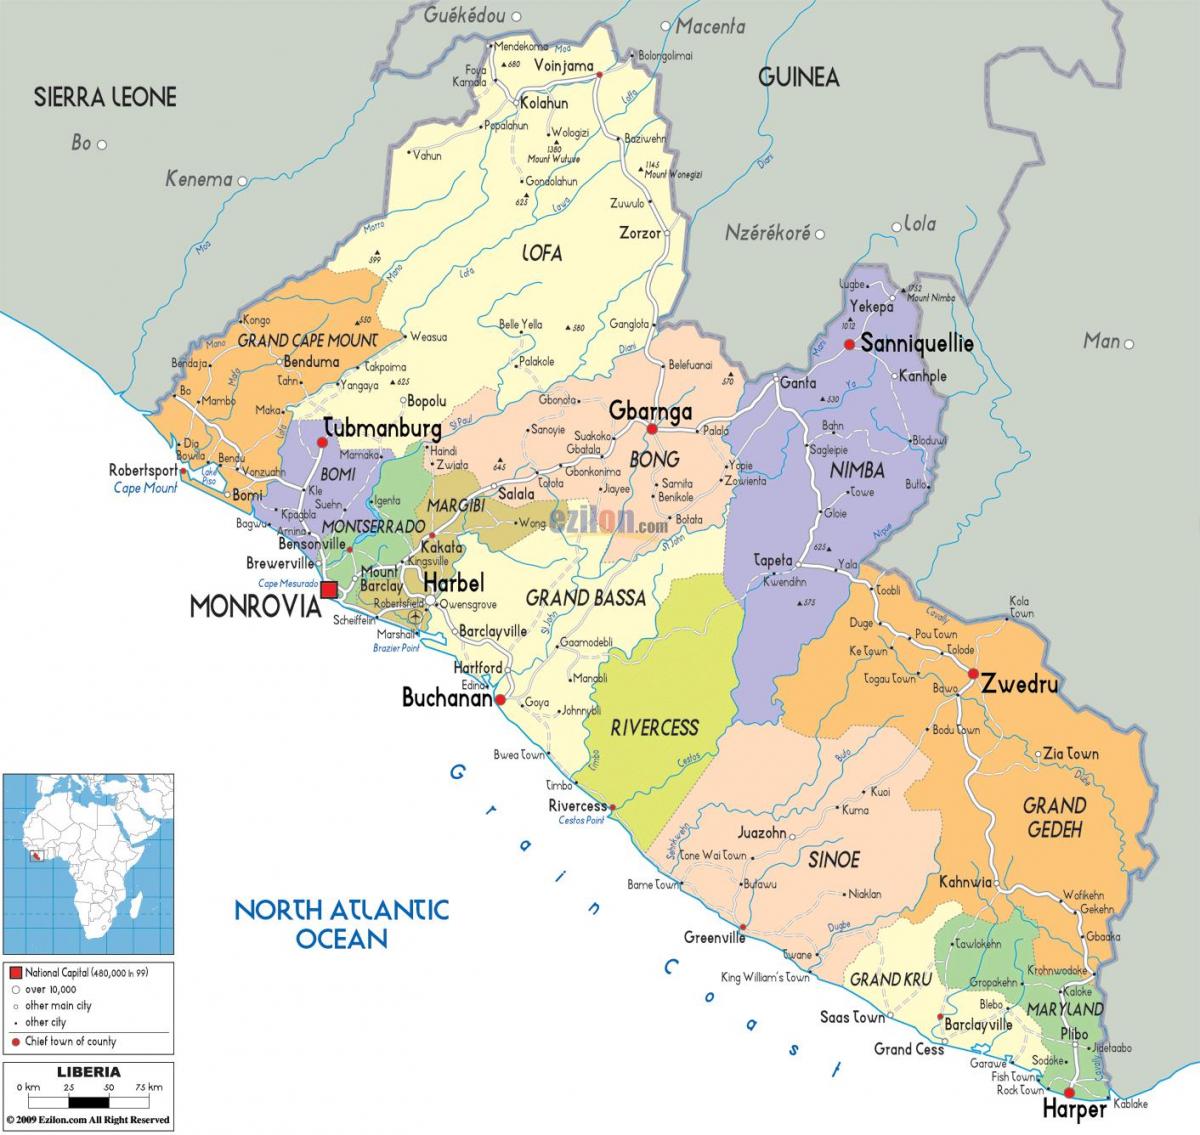 মানচিত্র, দেশ লাইবেরিয়া